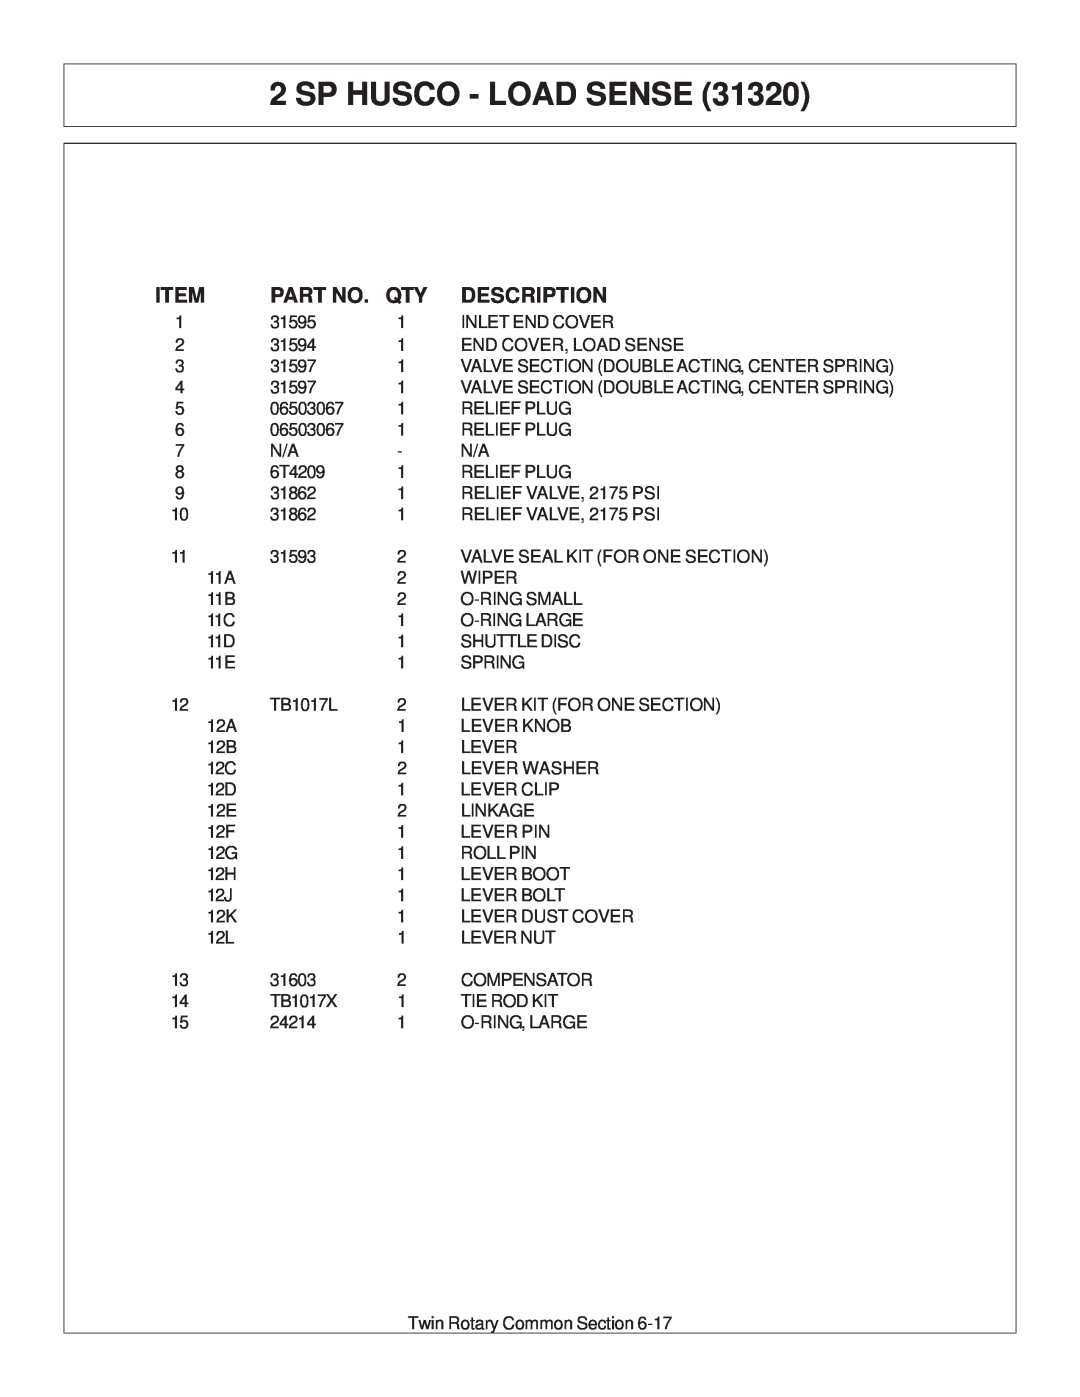 Tiger Products Co., Ltd JD 72-7520 manual Sp Husco - Load Sense, Description 